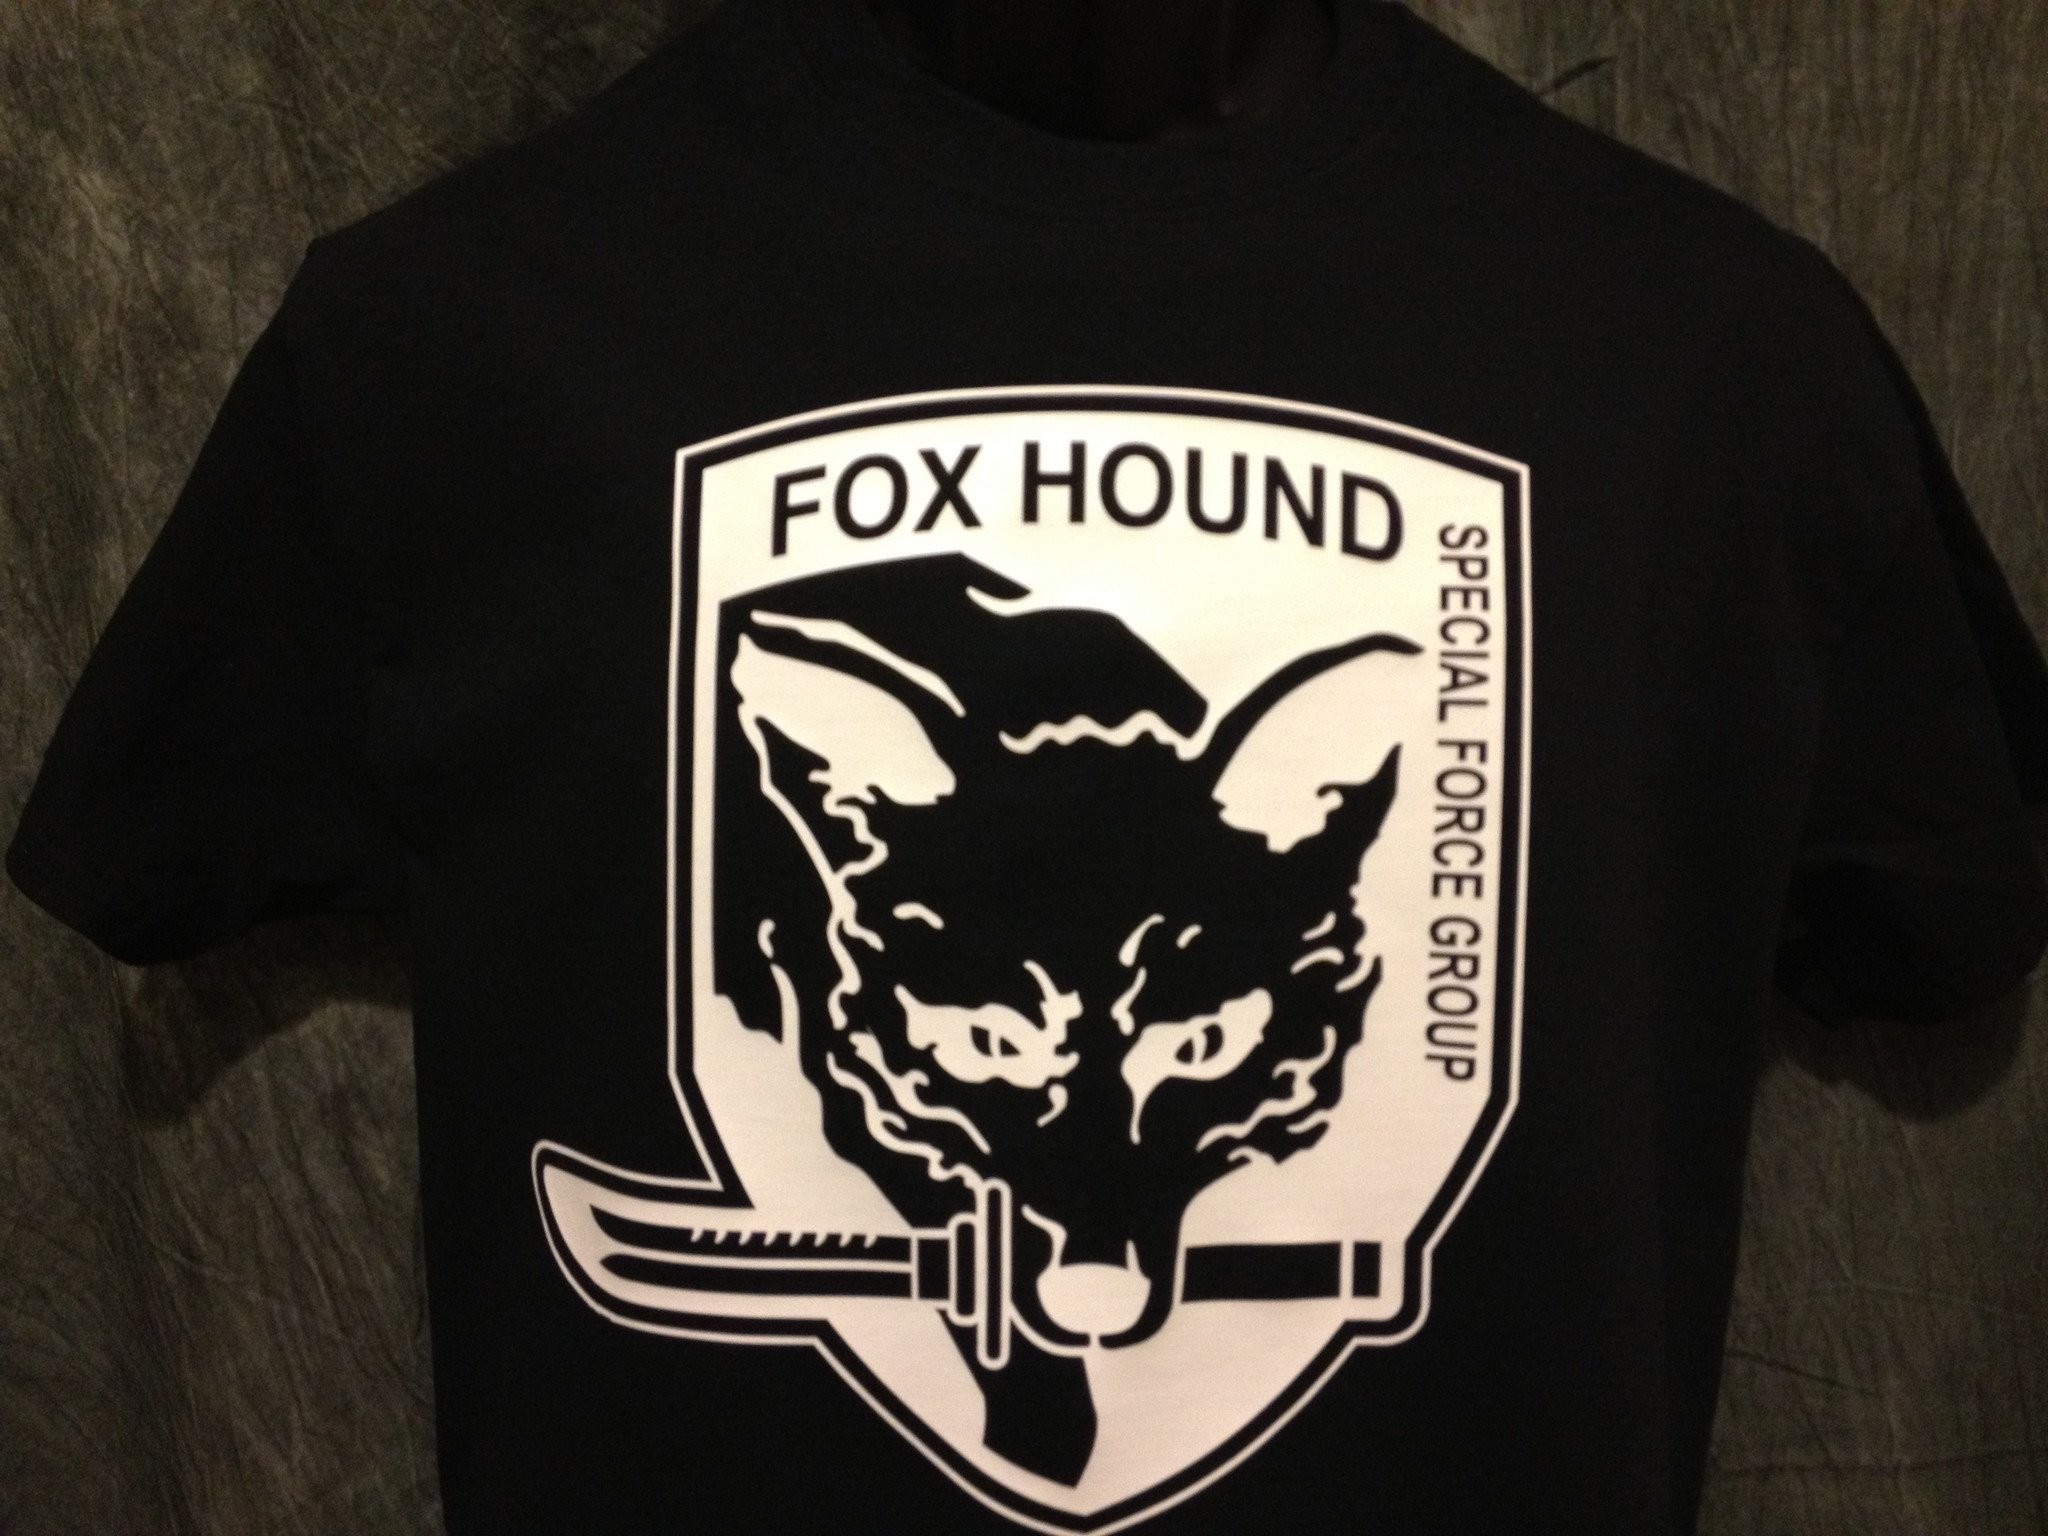 2048x1536 Metal Gear Solid Foxhound Tshirt: Black With White Print - TshirtNow.net - 4